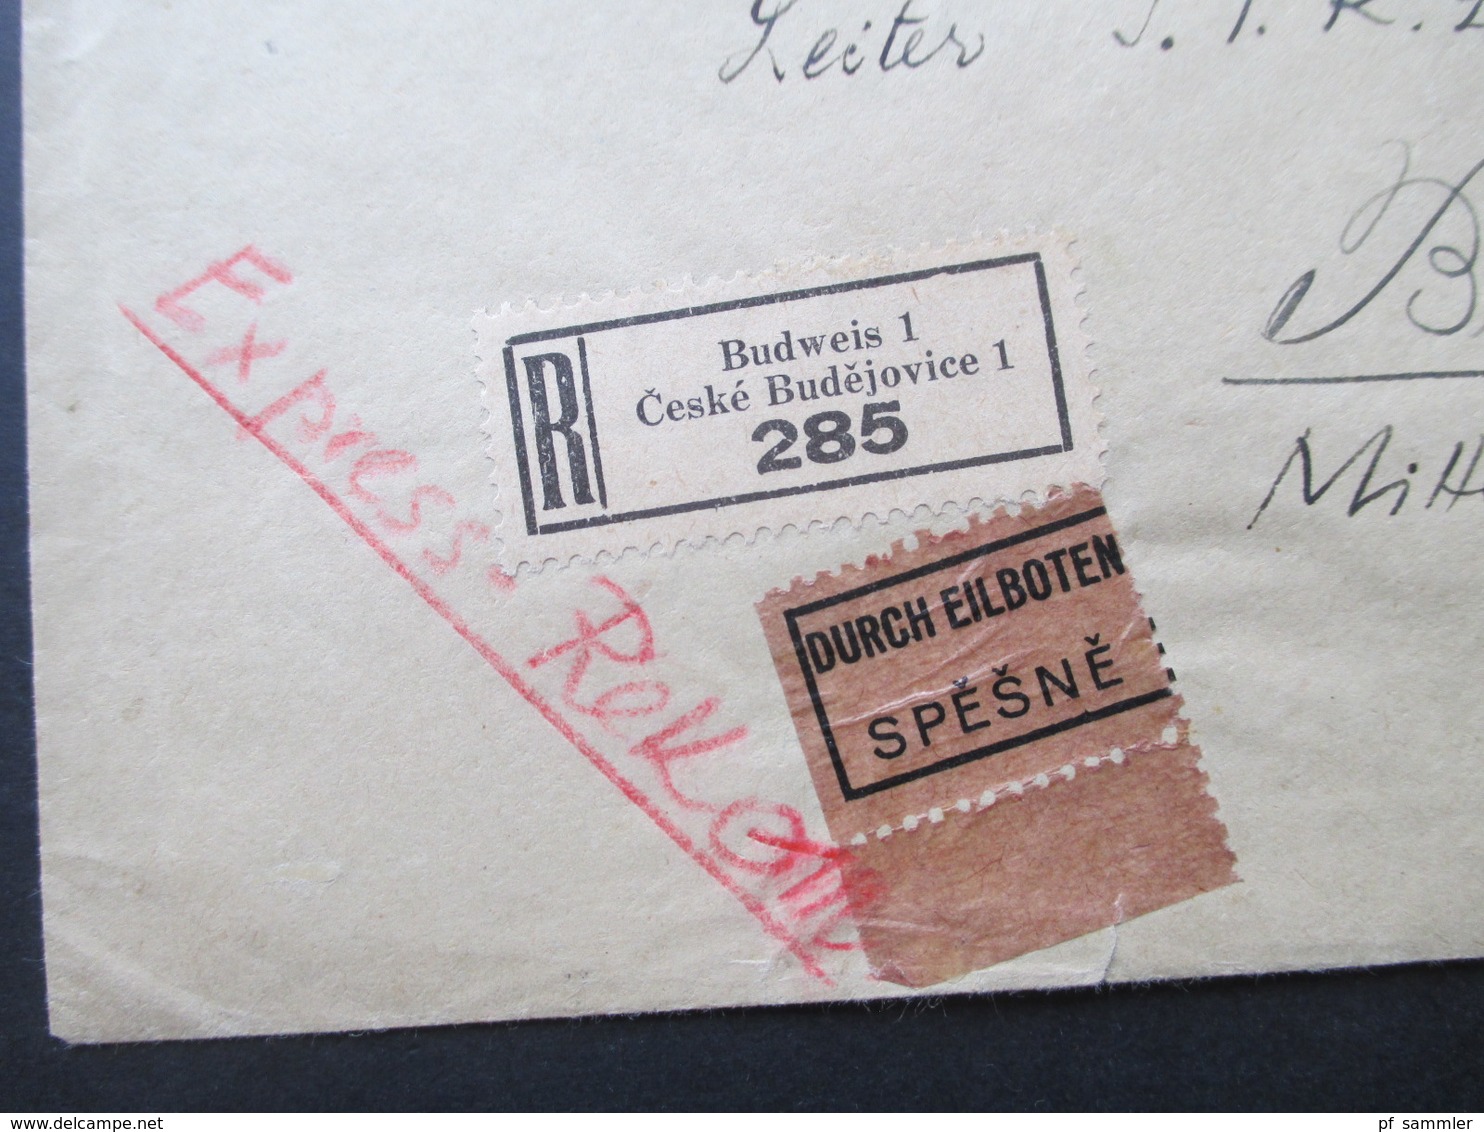 Böhmen Und Mähren 1942 MiF Einschreiben / Durch Eilboten Spesne Zweisprachiger R-Zettel Budweis 1 Ceske Budejovice 1 - Covers & Documents